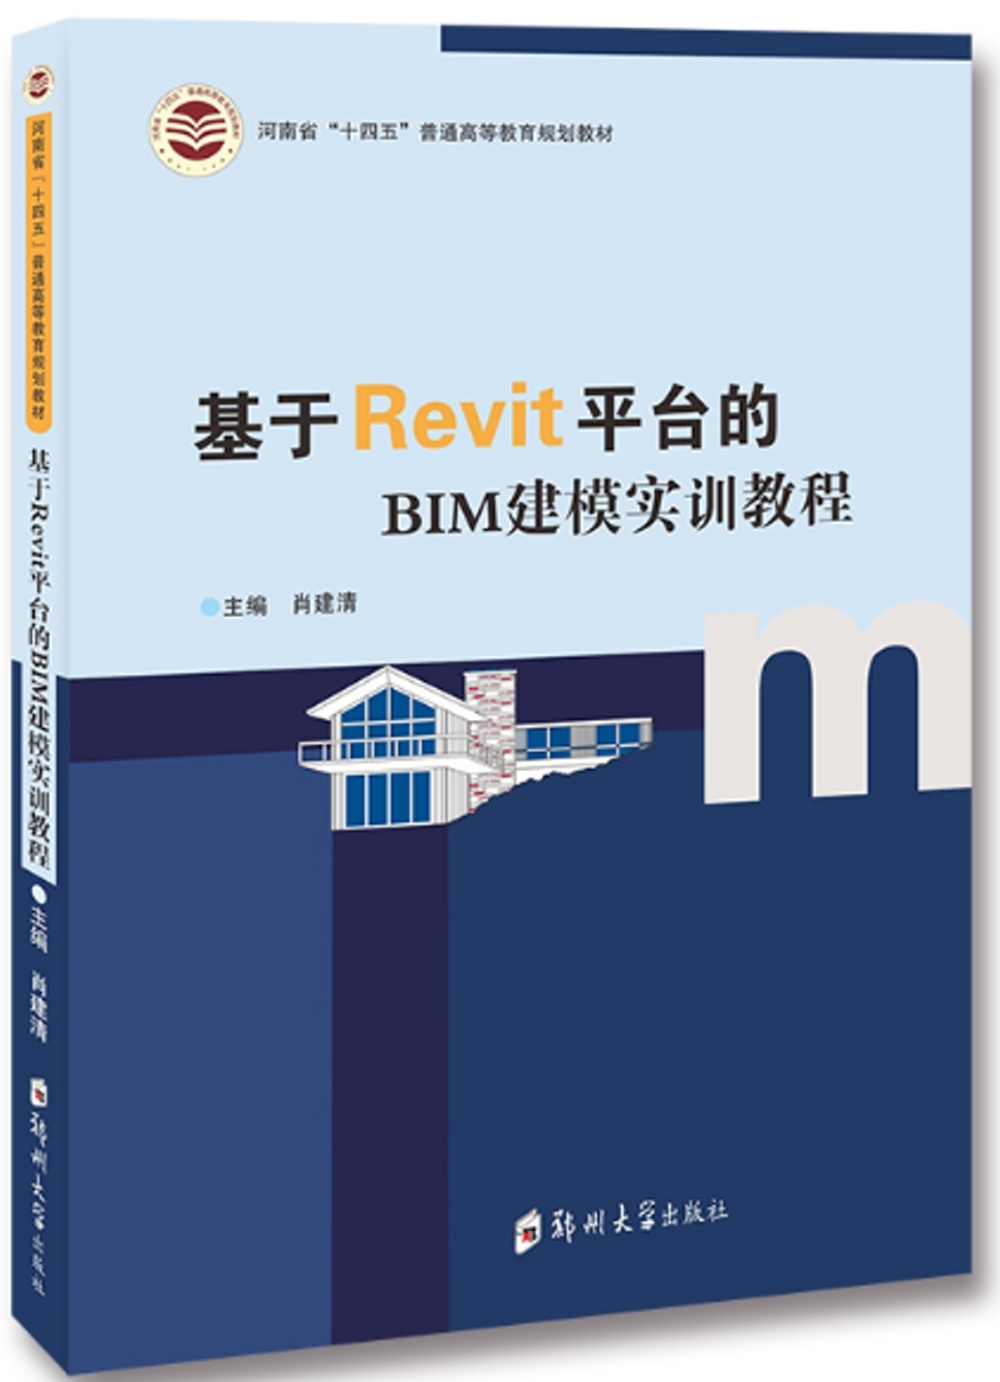 基於Revit平台的BIM建模實訓教程